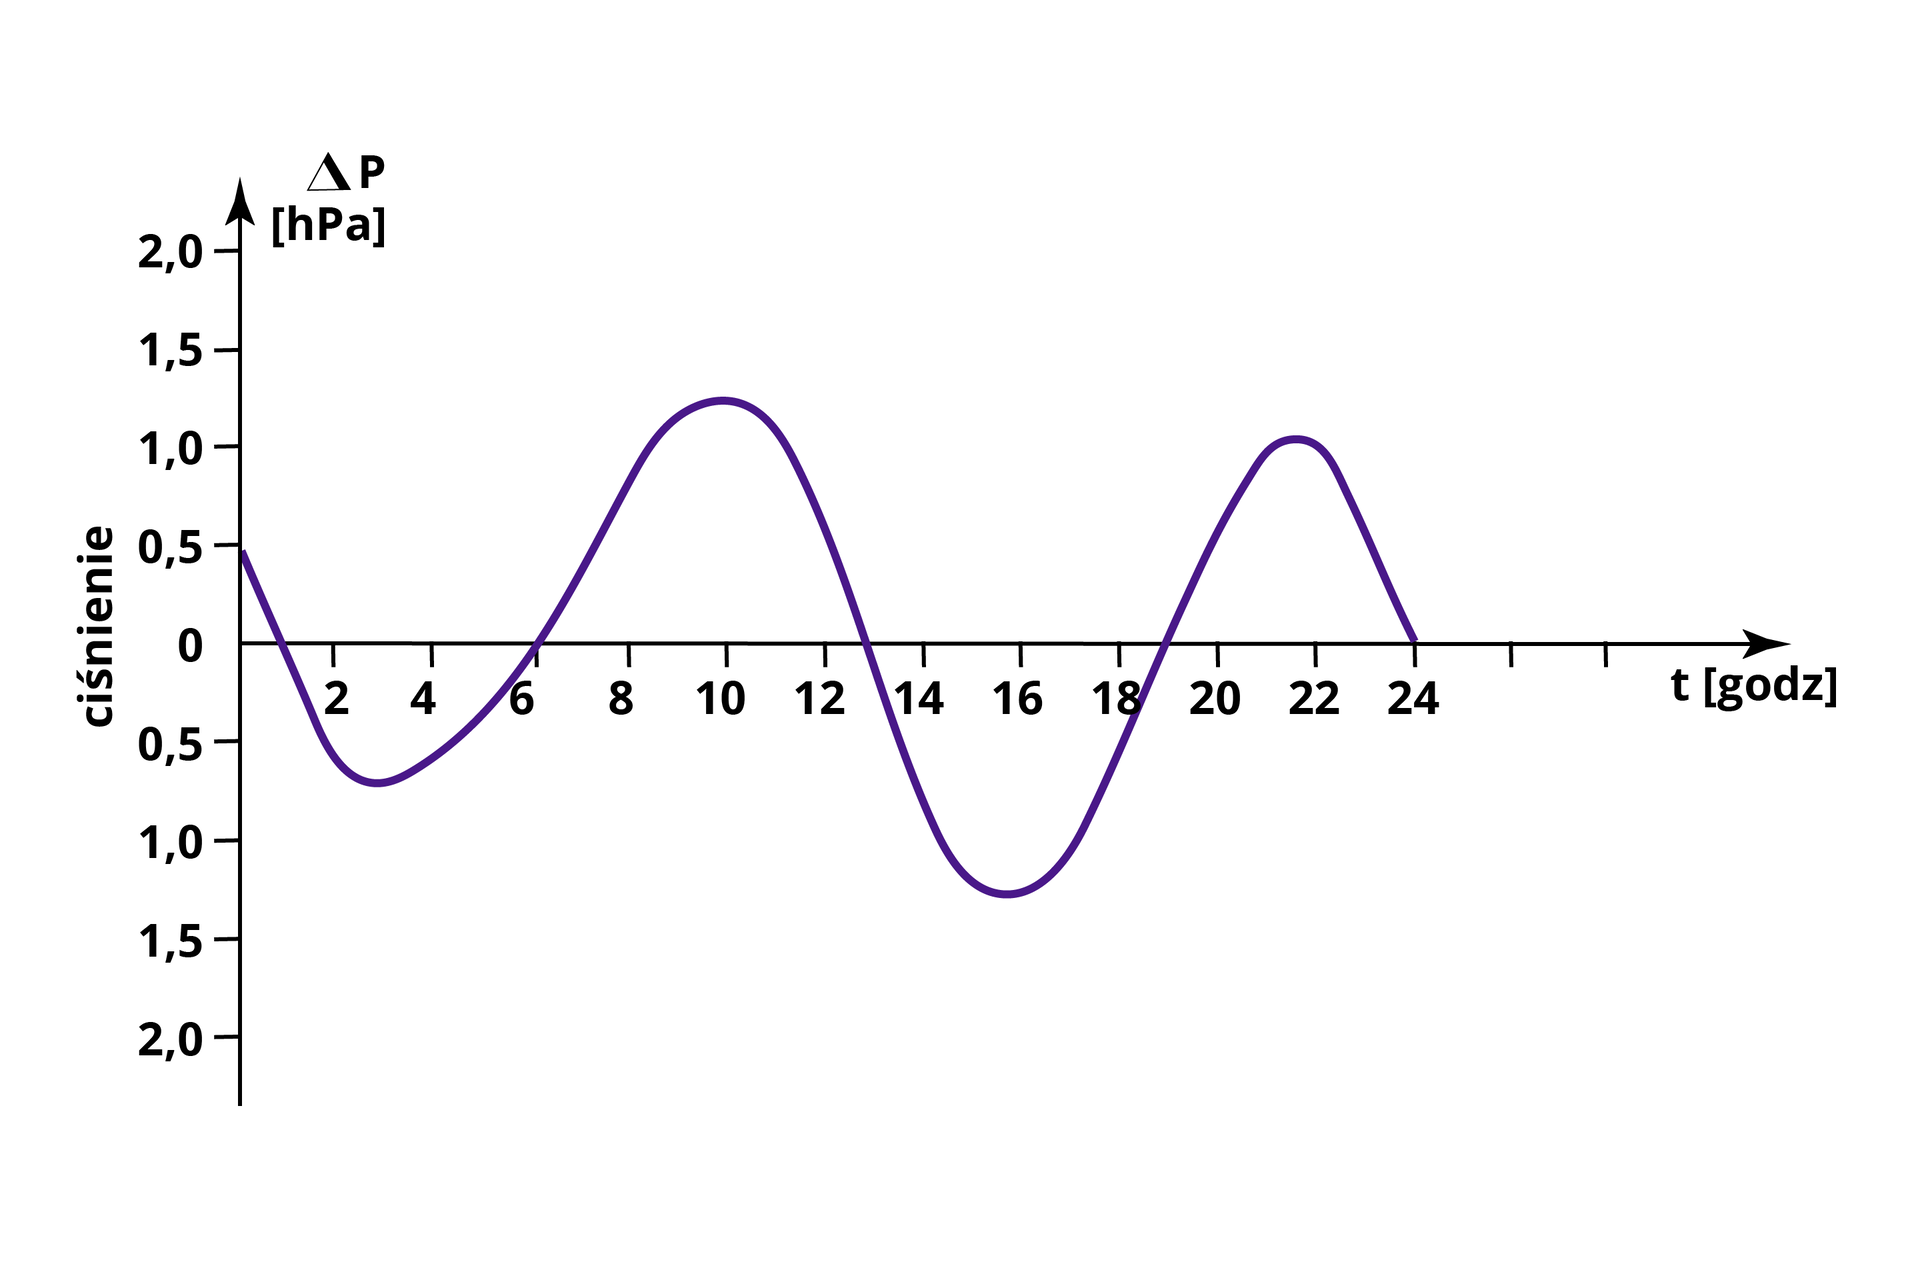 Wykres przedstawia dobowe wahania ciśnienia w strefie międzyzwrotnikowej. Oś x wykresu przedstawia czas w godzinach - są one zaznaczone na osi co dwie godziny. Natomiast oś y oznacza wartość ciśnienia w hektopaskalach – jednostka jest zaznaczona co pół hektopaskala. Wykres rozpoczyna się od wartości pół hektopaskala na osi y i z czasem spada aż do minus półtora hektopaskala w trzeciej godzinie. Kolejno wzrasta, przechodzi przez wartość zero w szóstej godzinie i osiąga wartość półtora hektopaskala w dziesiątej godzinie. Dalej spada, przechodzi przez zero na osi y w trzynastej godzinie i osiąga wartość  - półtora hektopaskala w szesnastej godzinie. Następnie wzrasta, przechodzi przez zero na osi y w dziewiętnastej godzinie i osiąga jeden hektopaskal w dwudziestej drugiej godzinie. Później znów spada, aż do ciśnienie wyniesie zero hektopaskali w dwudziestej czwartej godzinie. 